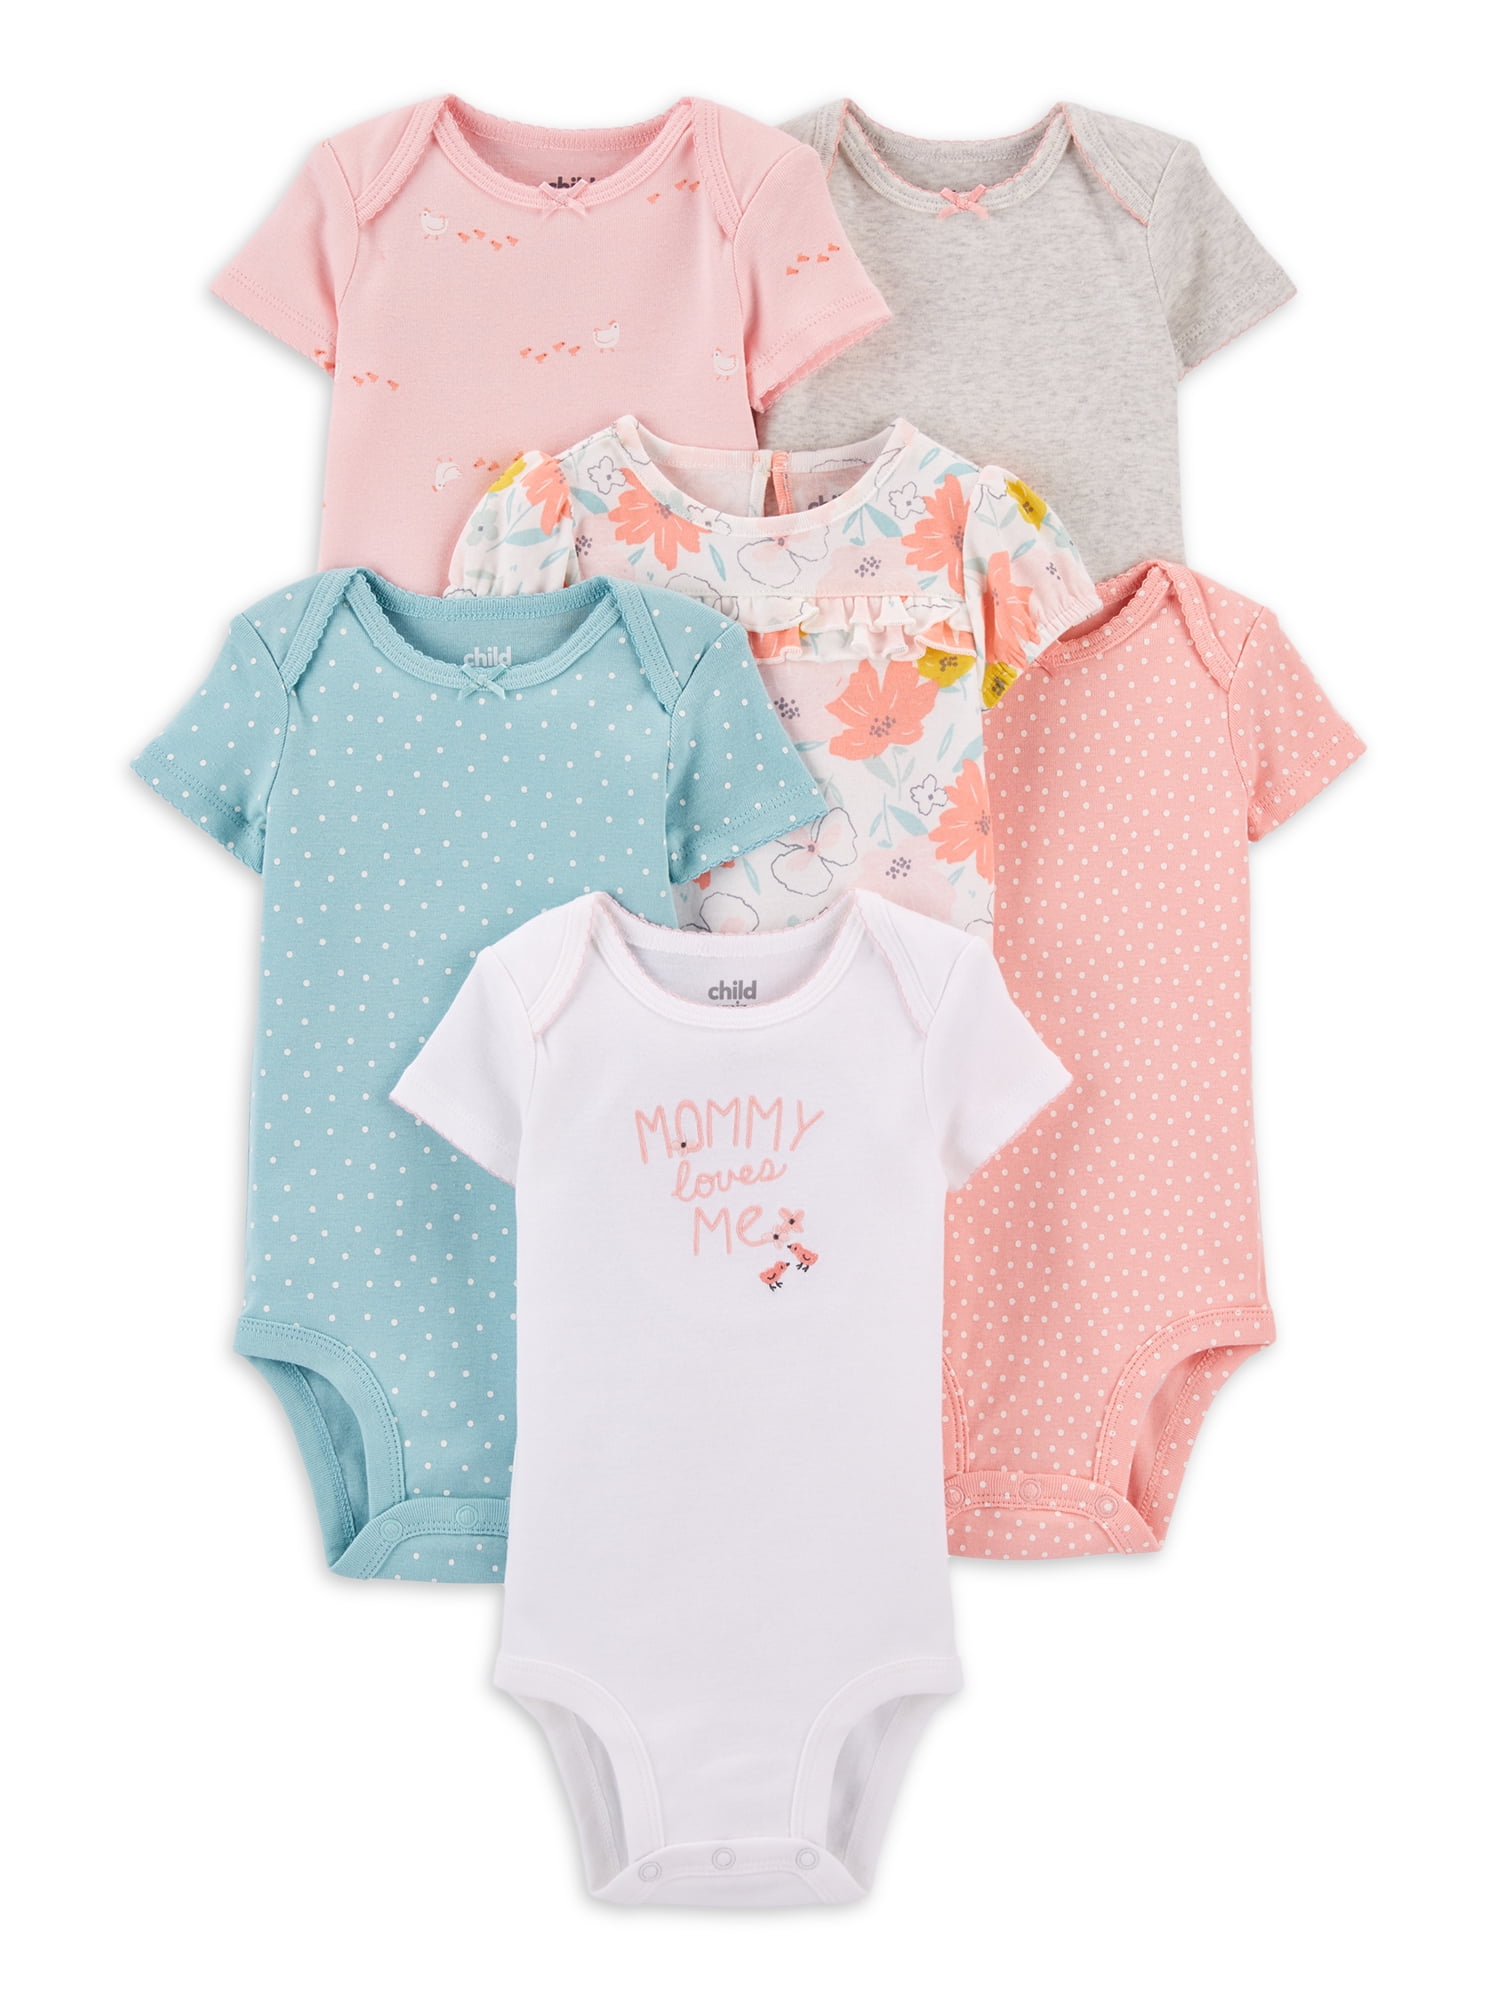 GAP Baby Girl Flutter Bodysuit 12-18 months Long short sleeve make your bundle